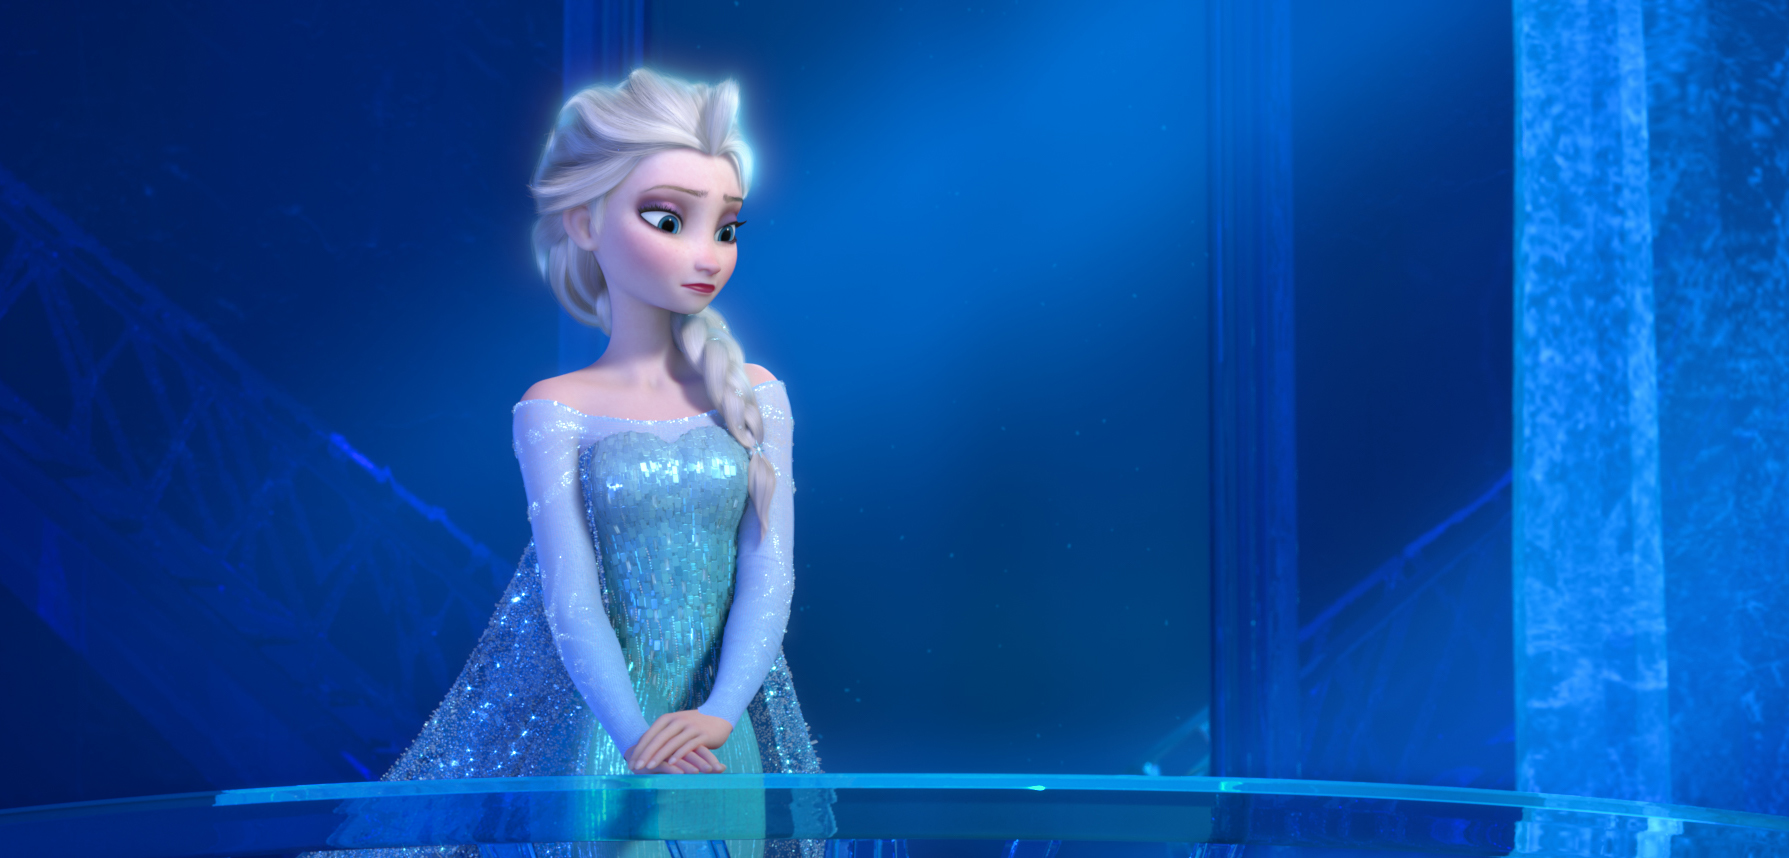 Elsas sång "Let It Go", om att omfamna det som är annorlunda hos en själv, kan tolkas som en komma-ut-sång, menar pastorn. 